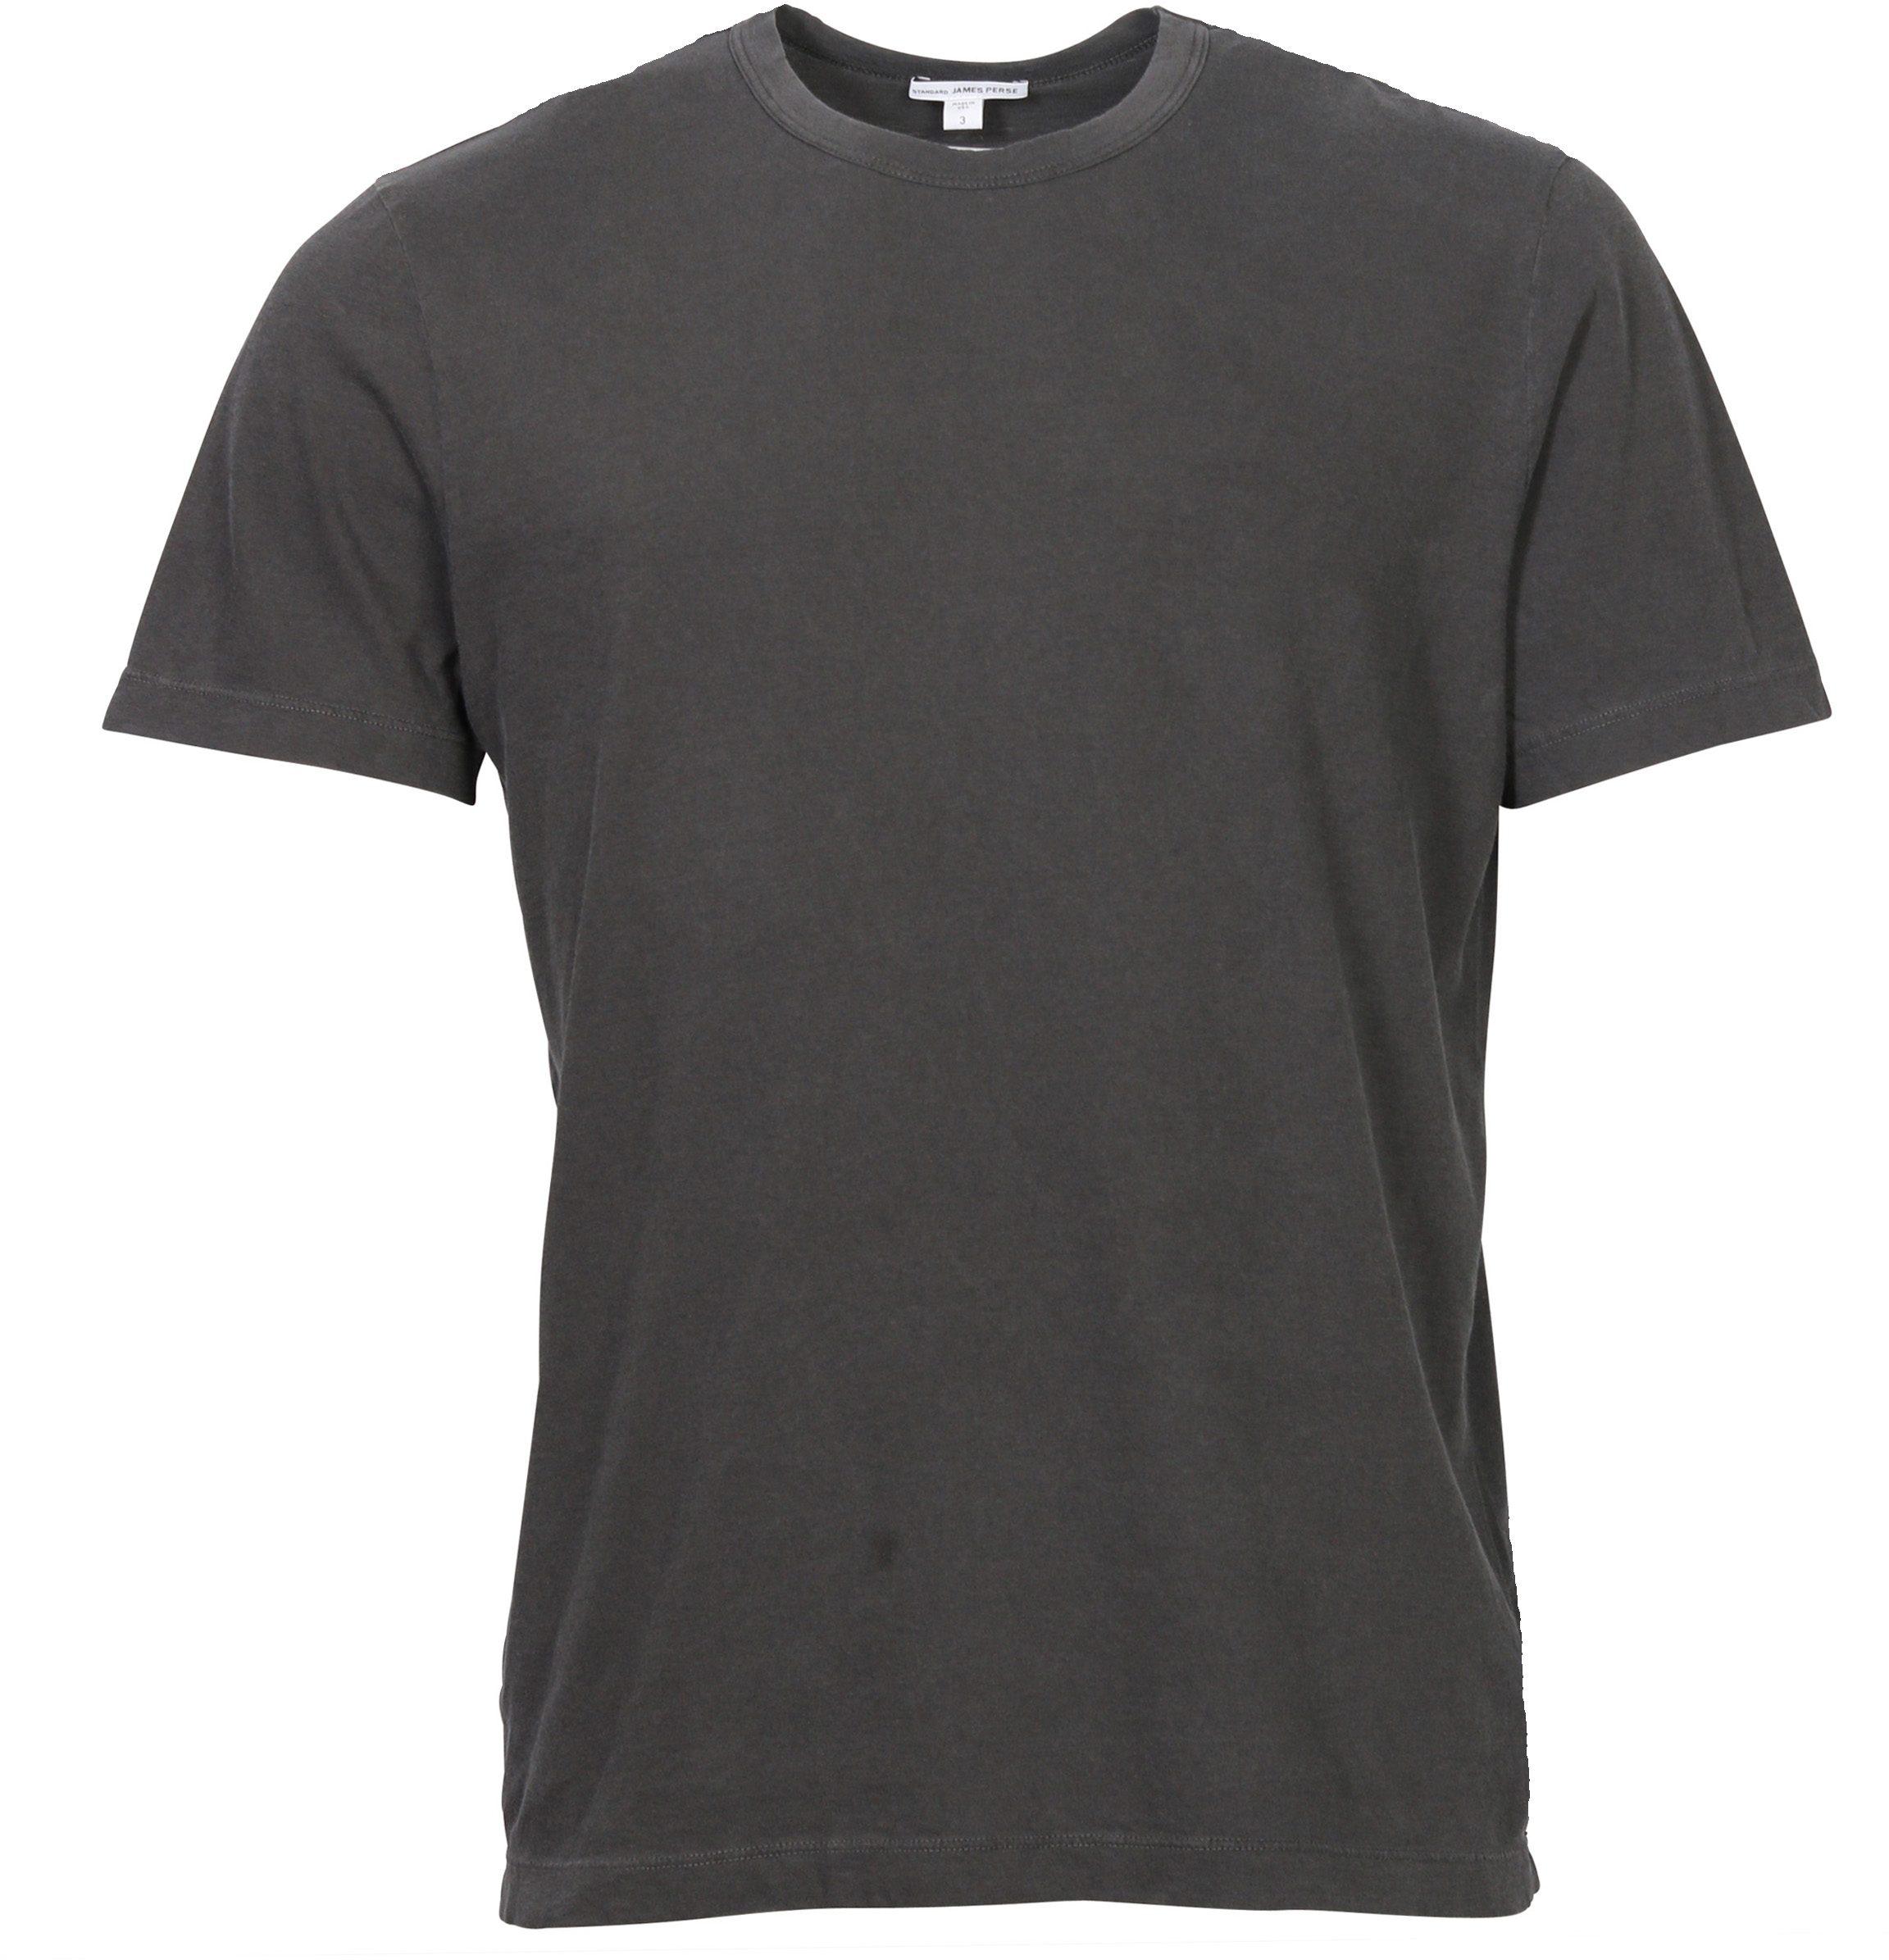 James Perse T-Shirt Crewneck Carbon